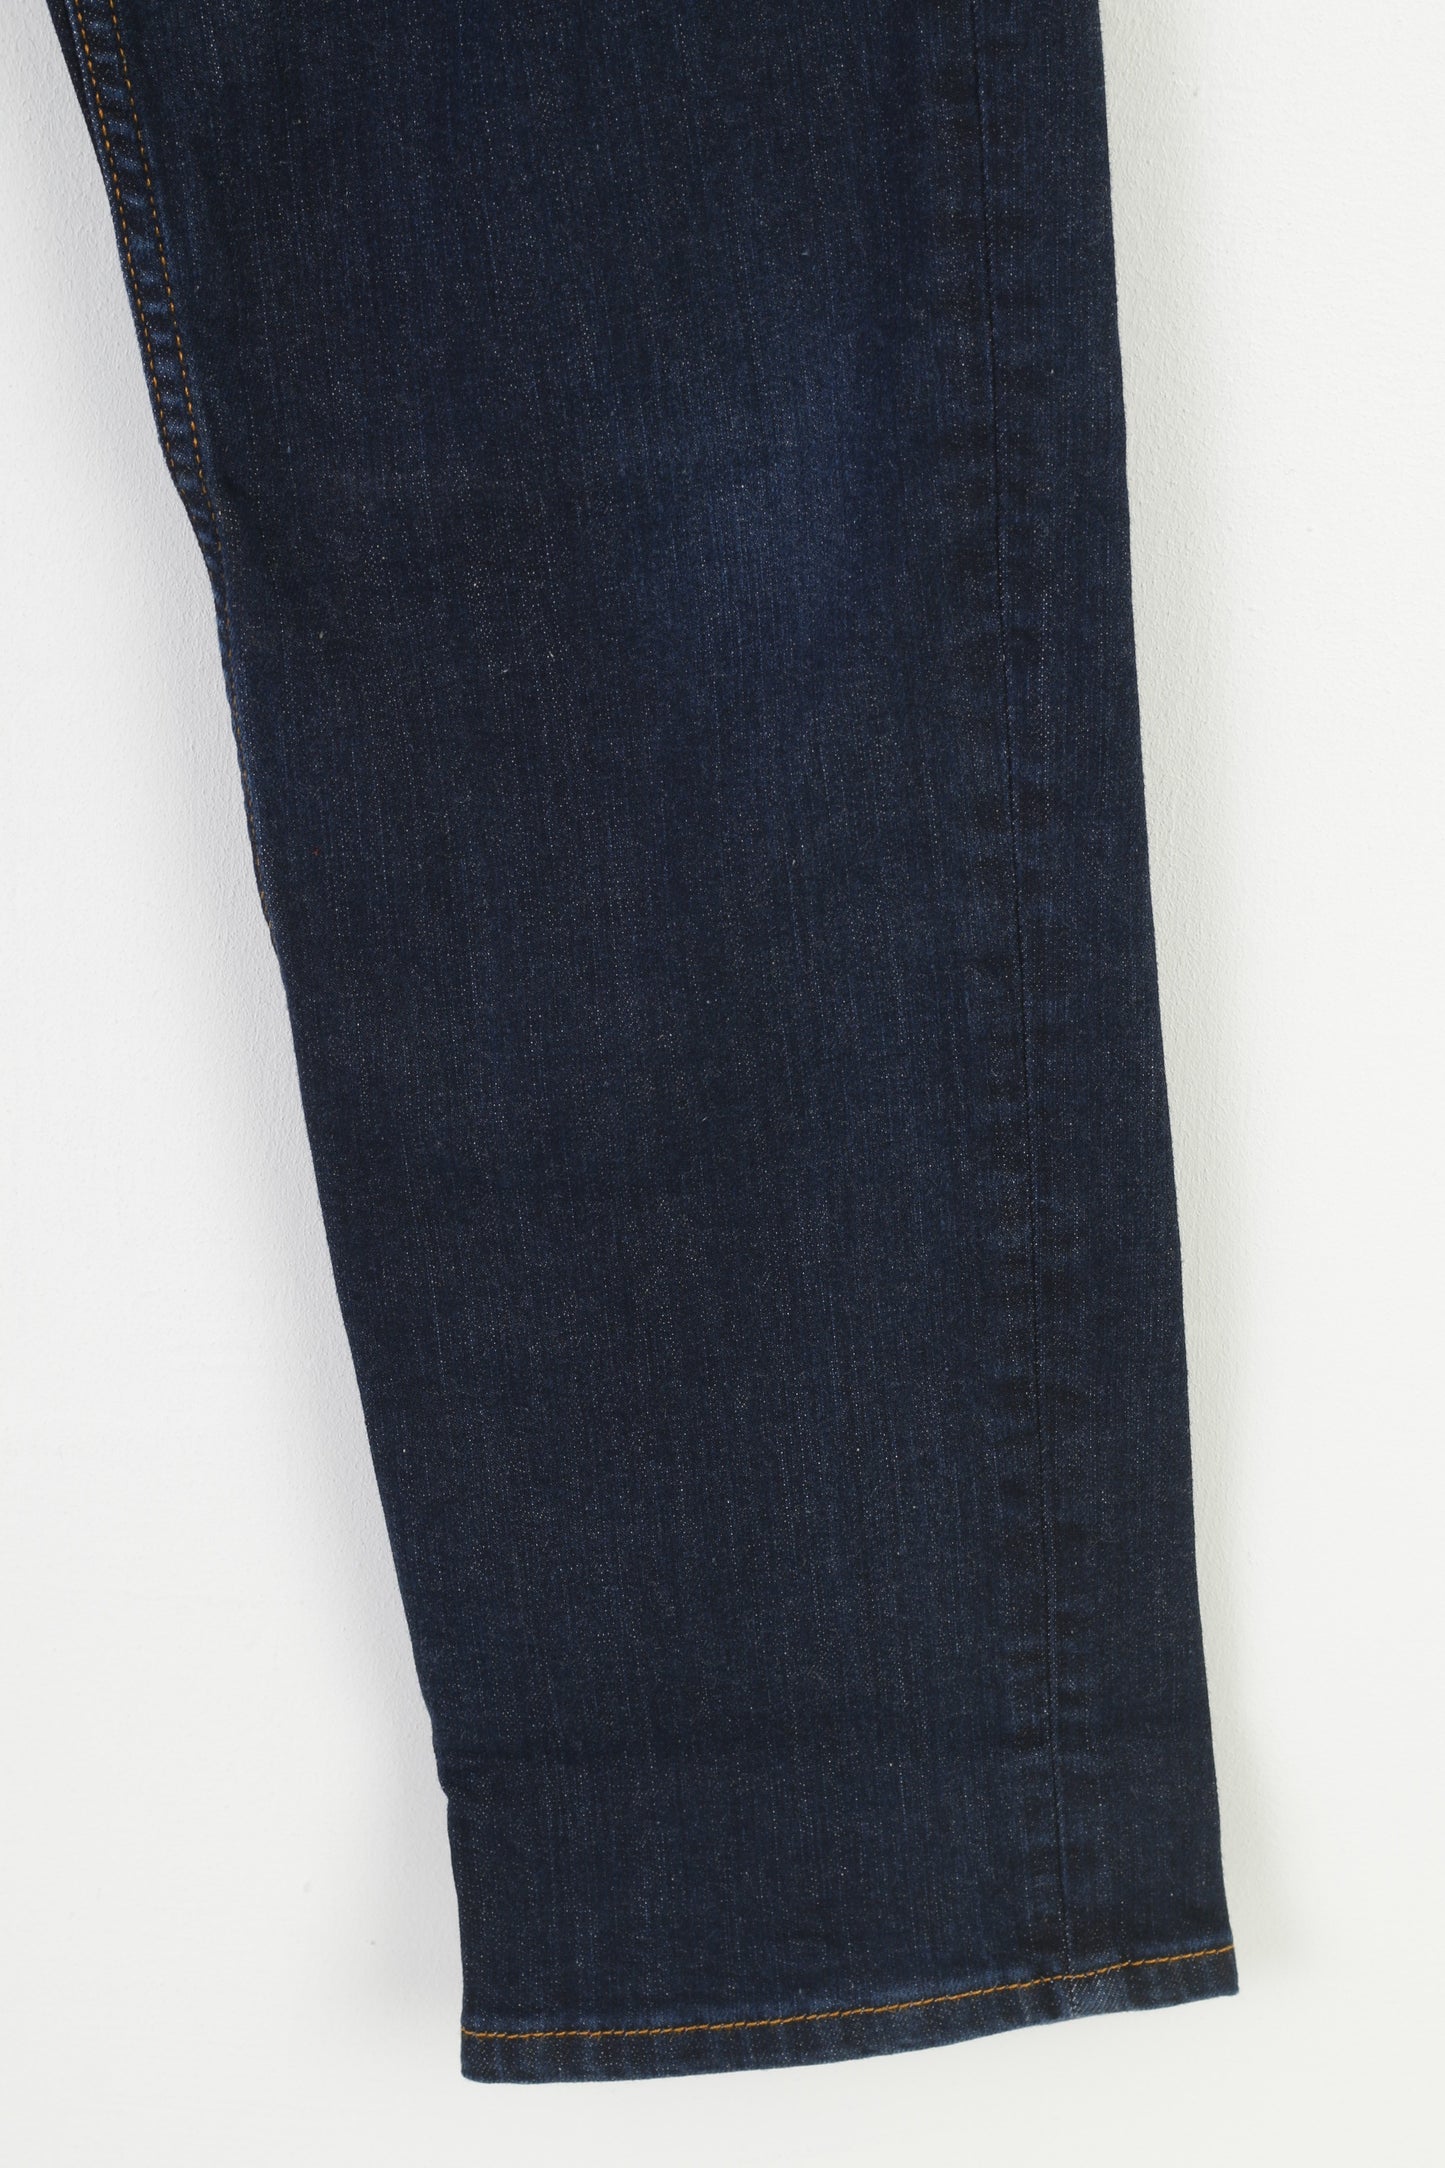 Henri Lloyd Femme 30 Jeans Pantalon Marine Coton Jambe Droite Pantalon Vintage 